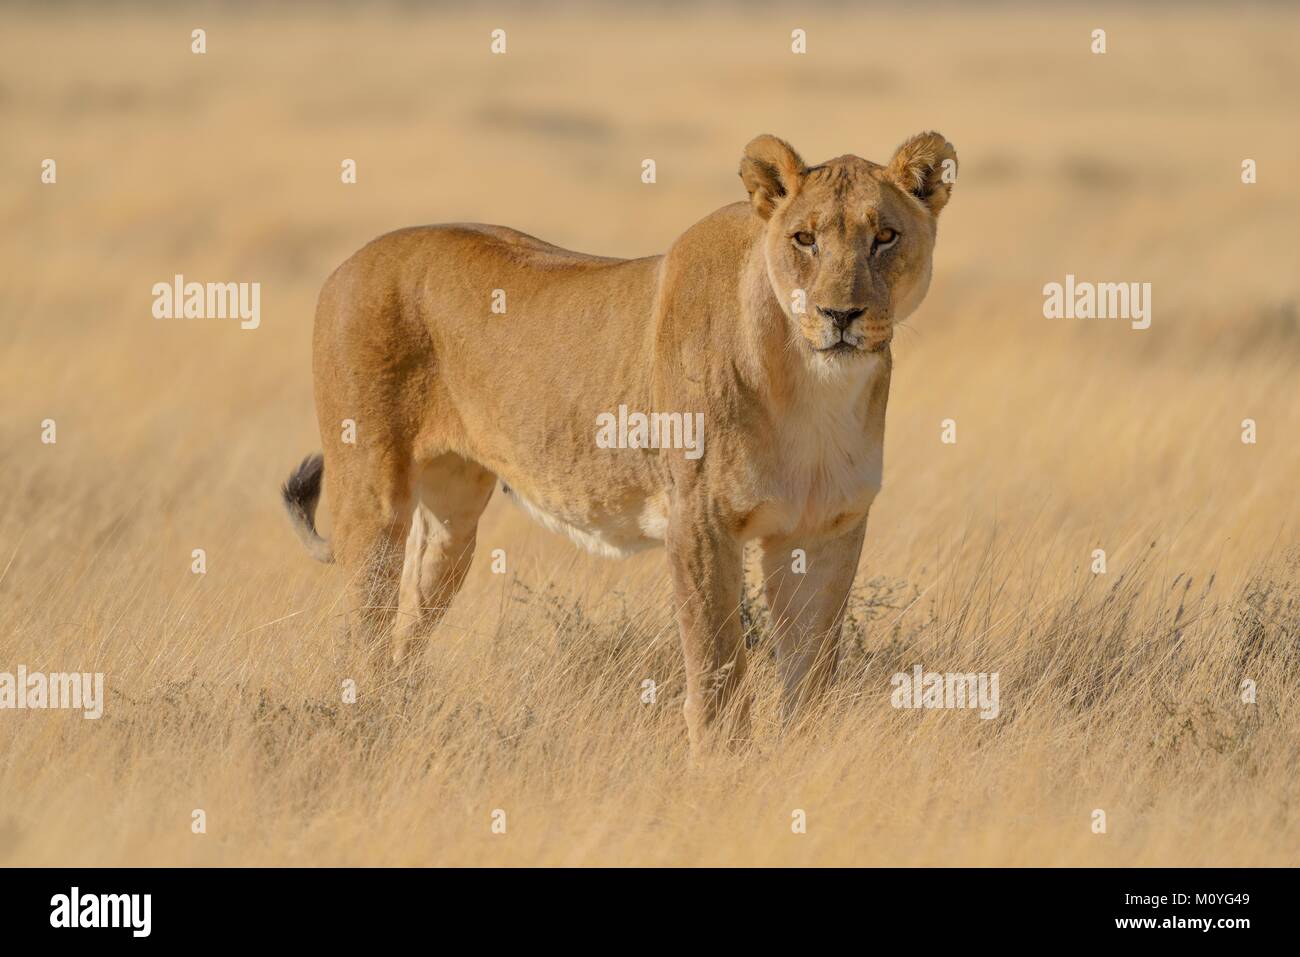 Lioness (Panthera leo) in dry grassland,Etosha National Park,Namibia Stock Photo